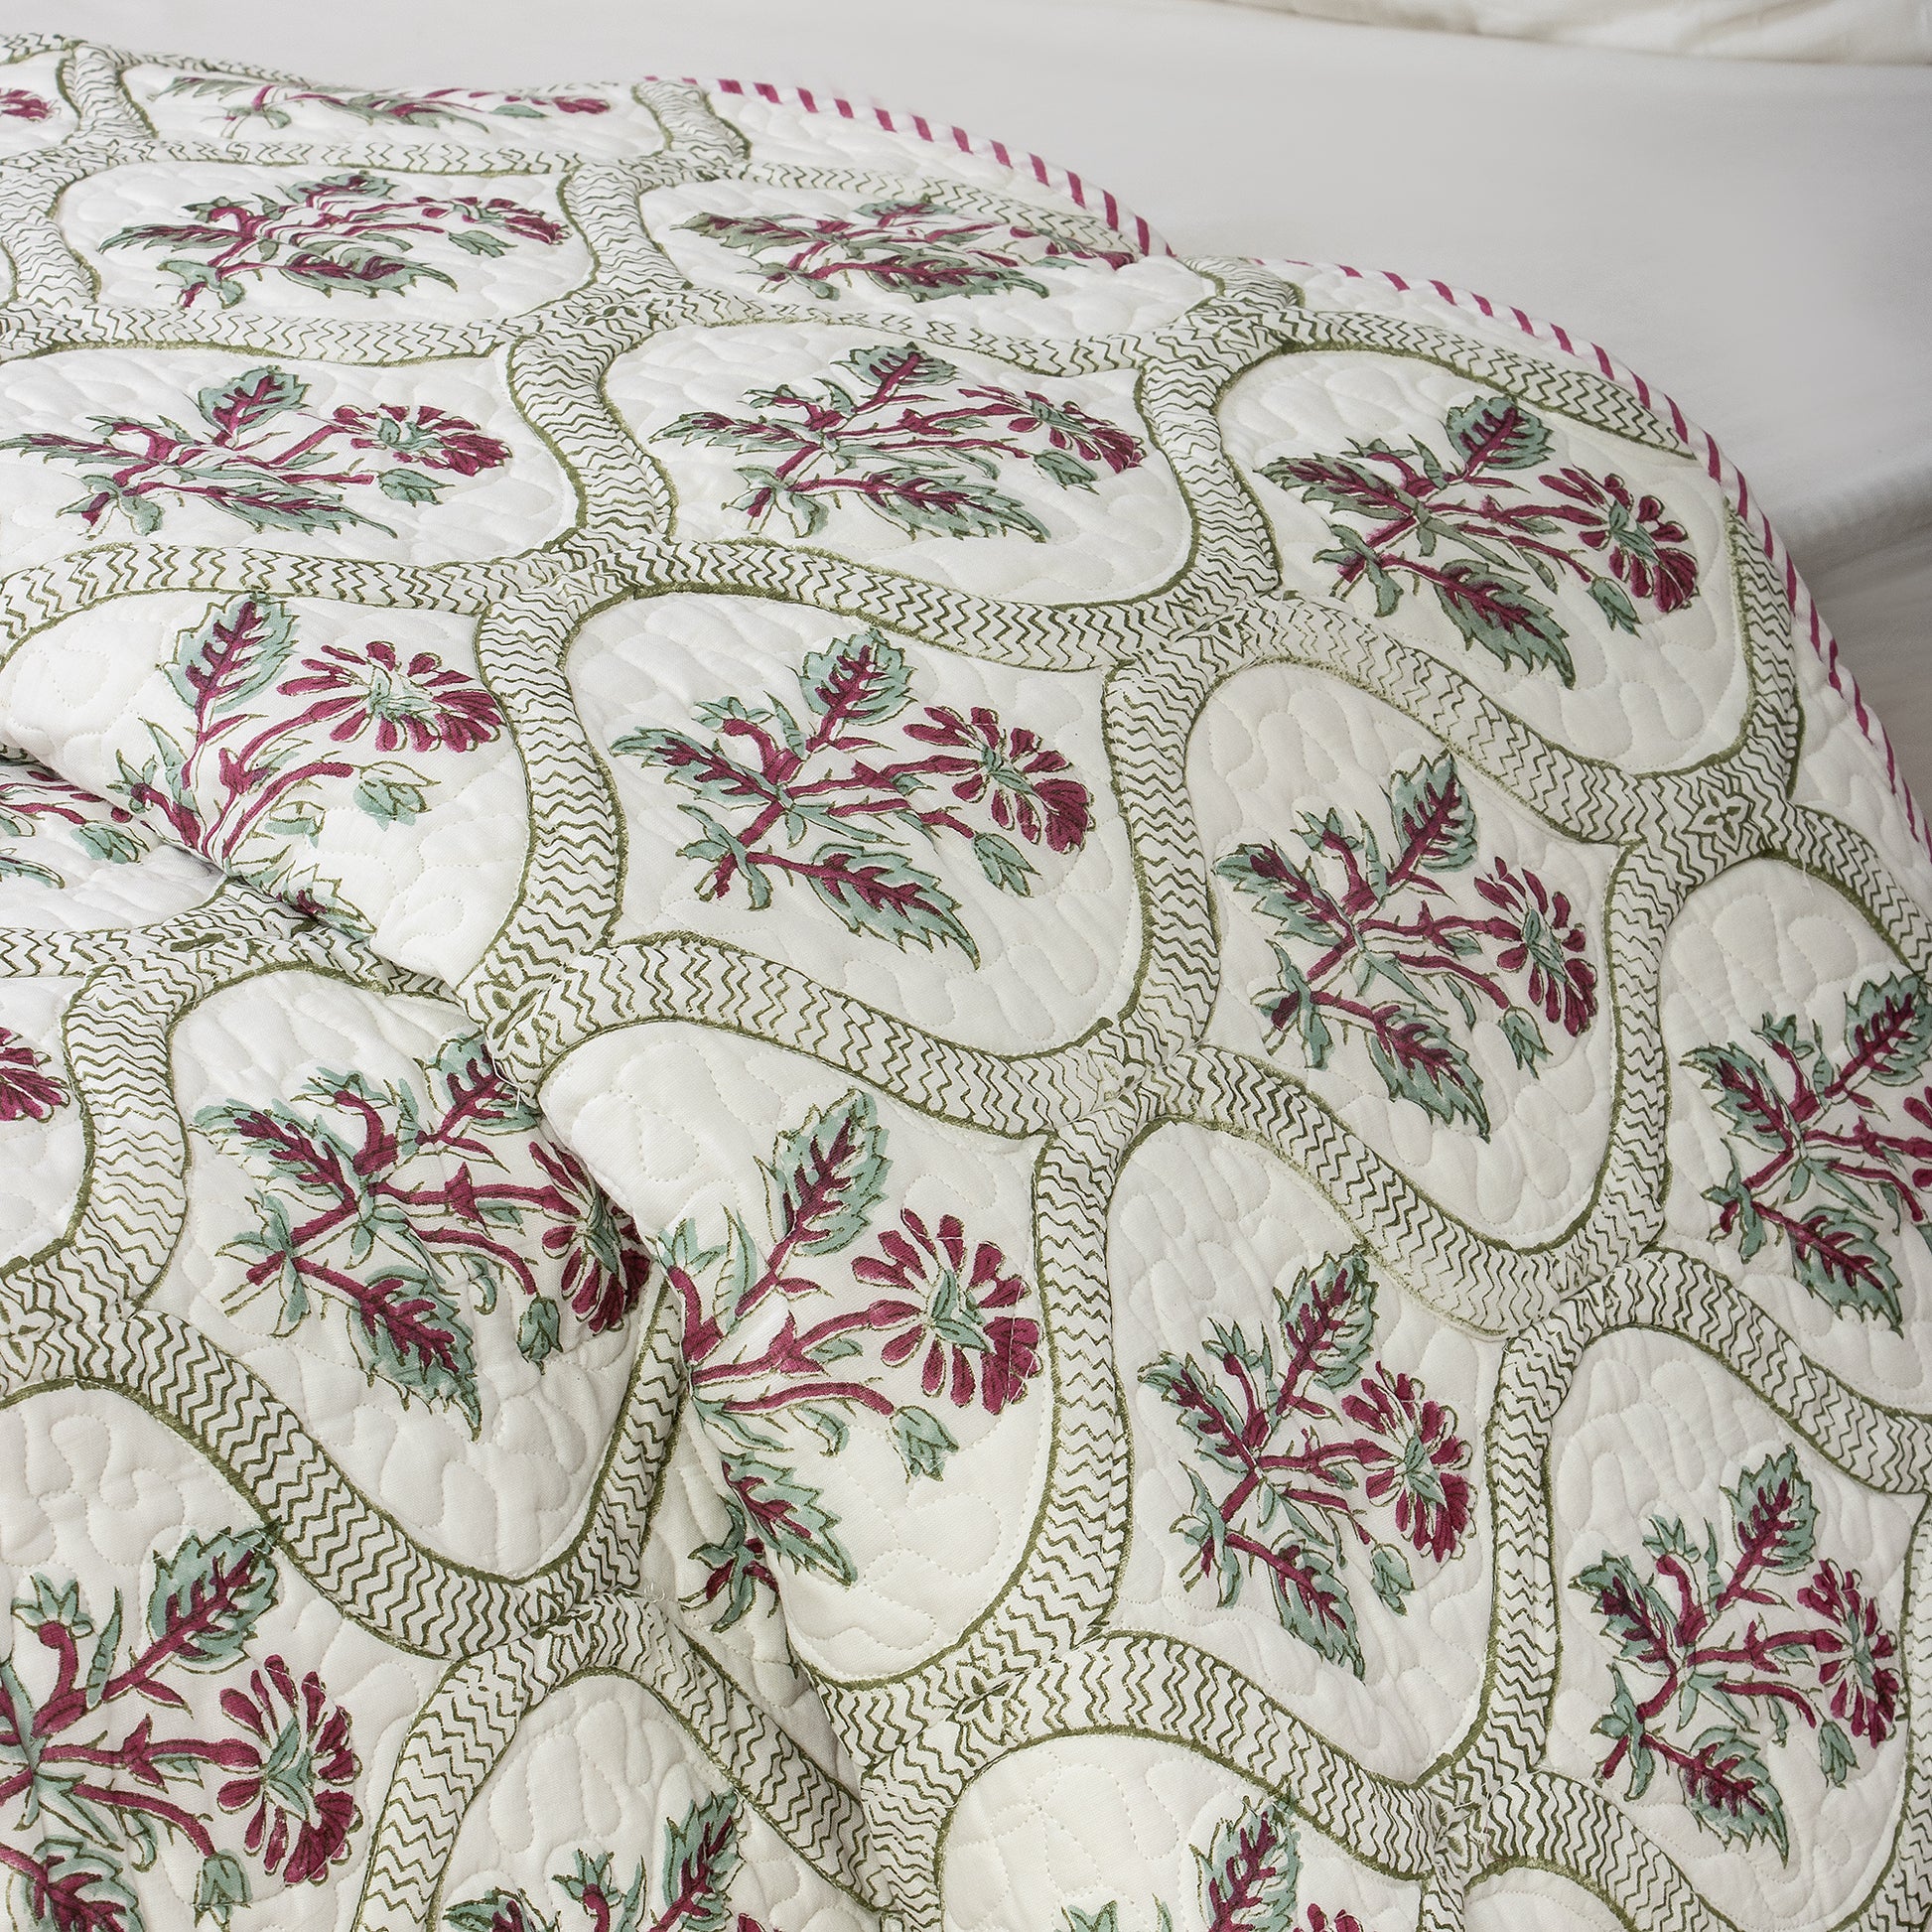 Multicolor Floral Print Soft Cotton Machin Quilts & Comforters